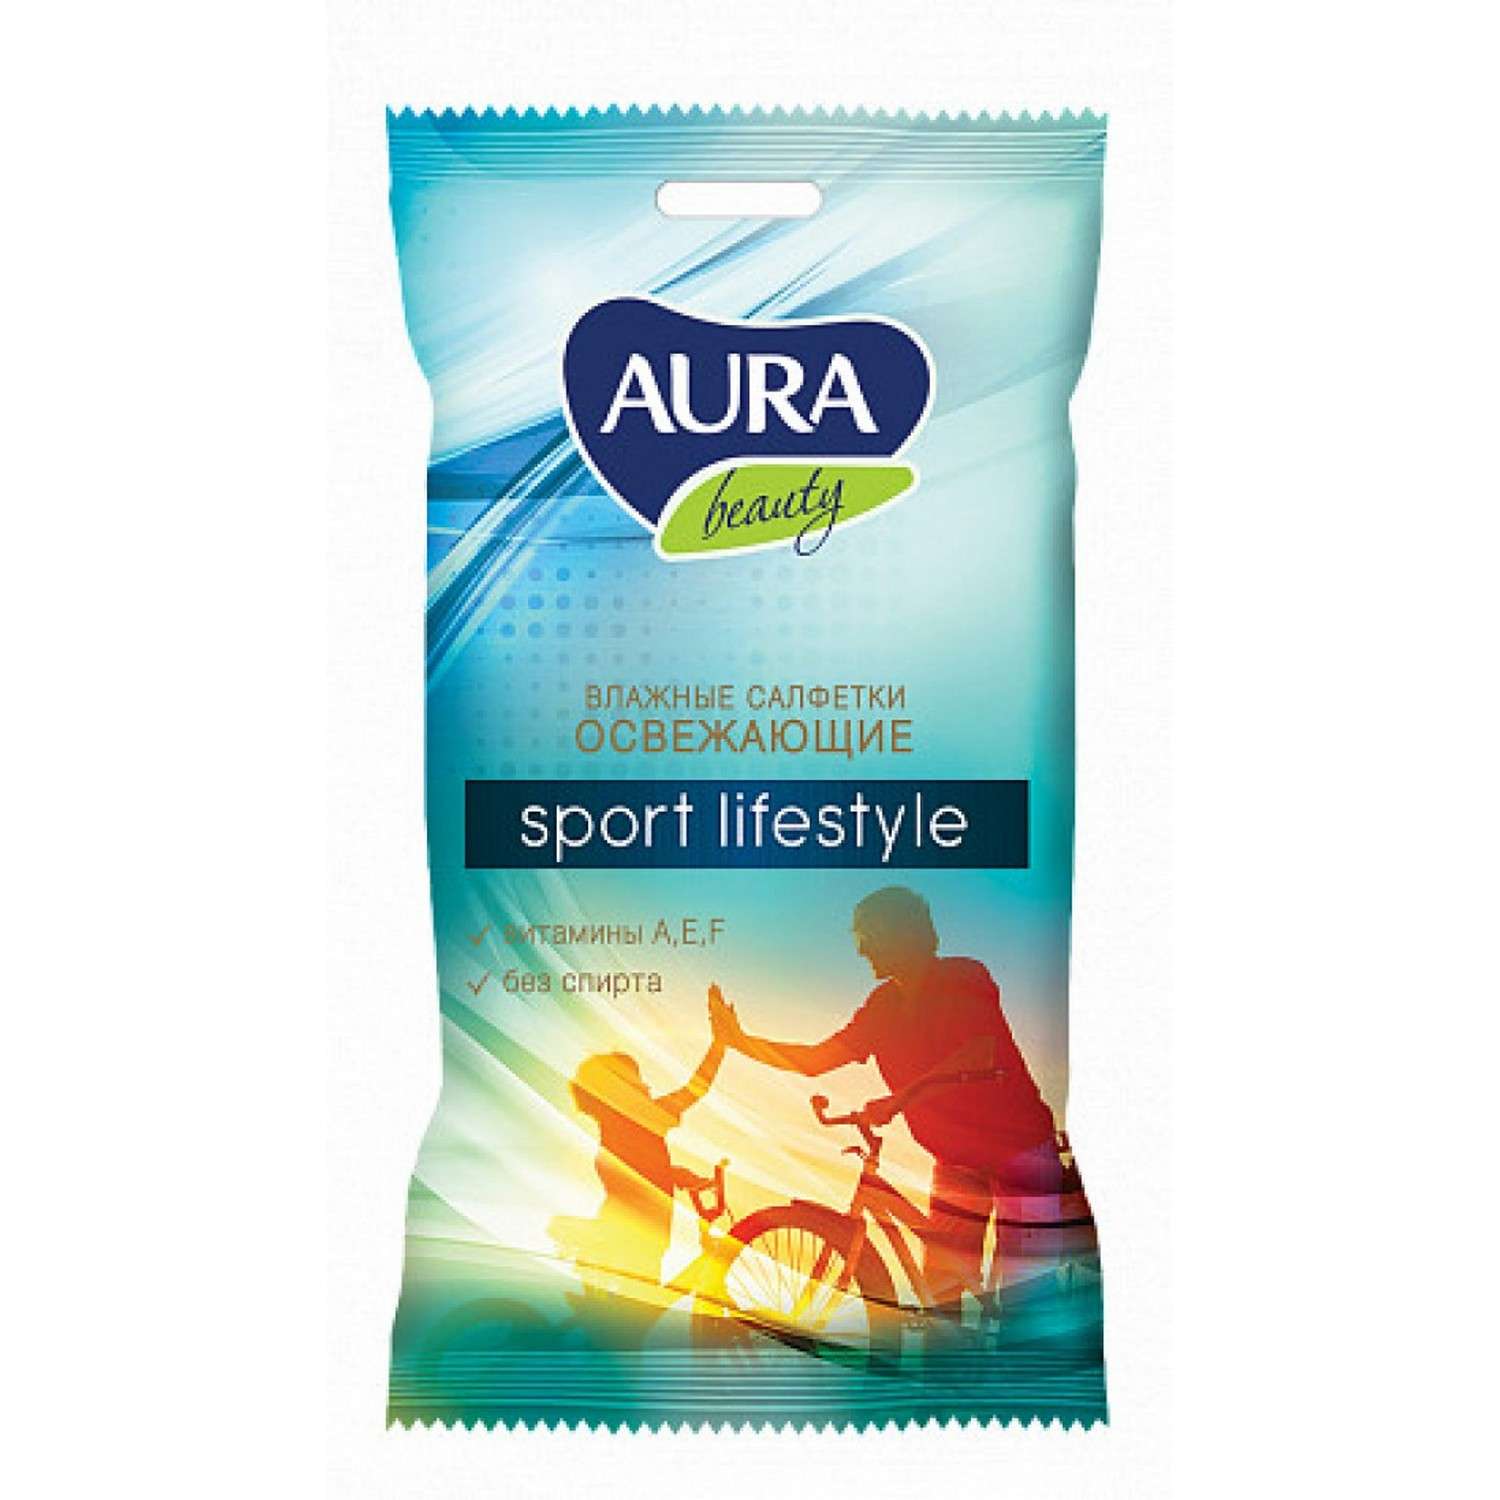 Влажные салфетки AURA Beauty освежающие sport lifestyle pocket-pack 15шт - фото 1